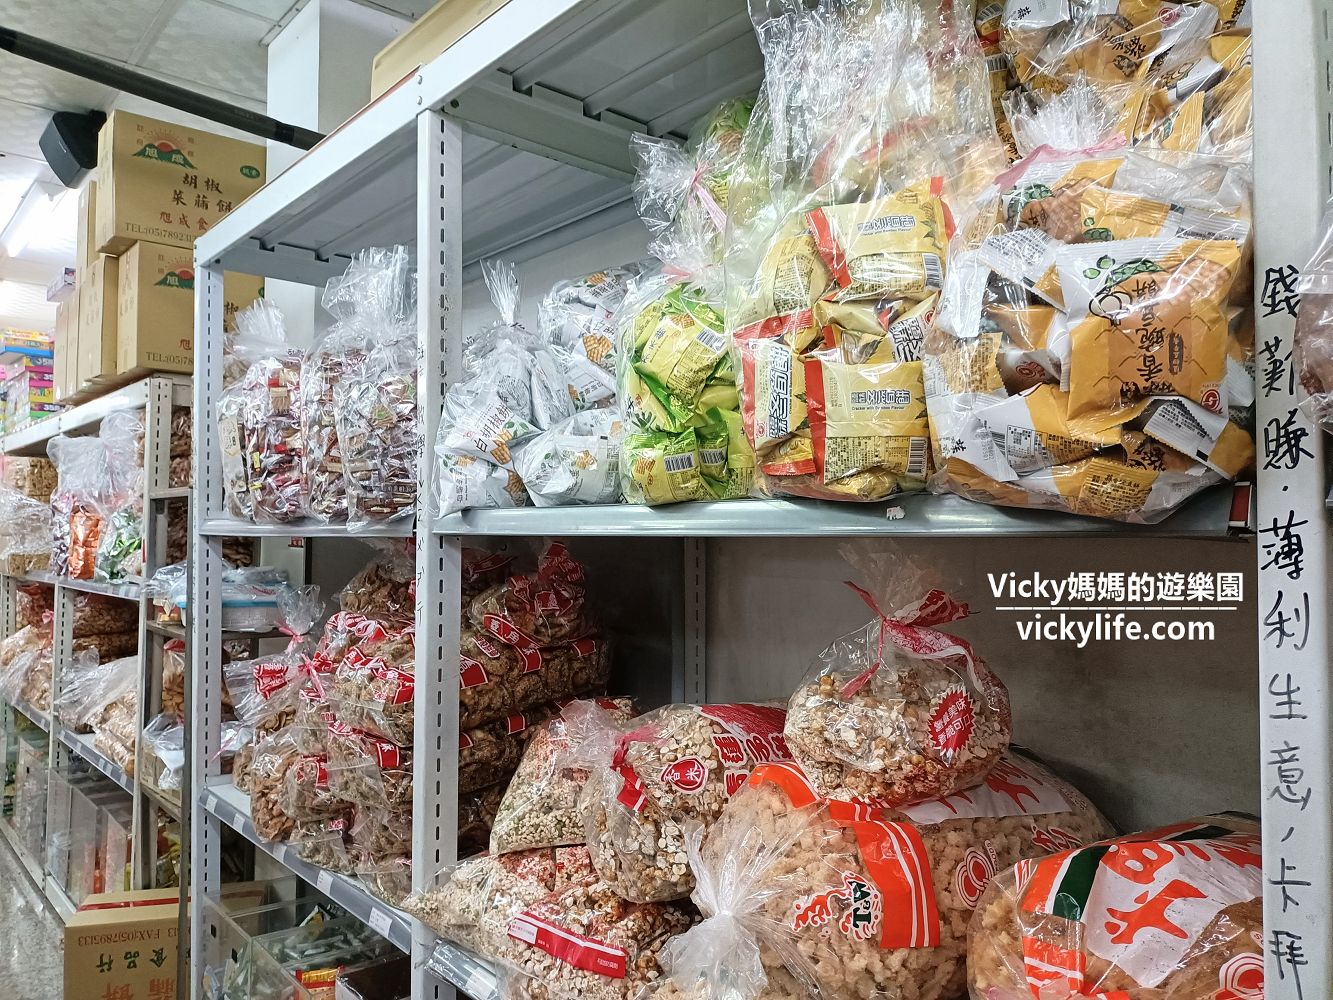 屏東萬丹︱內行人都知道來隆達食品飲料企業行買餅乾零食，大包裝買到爆